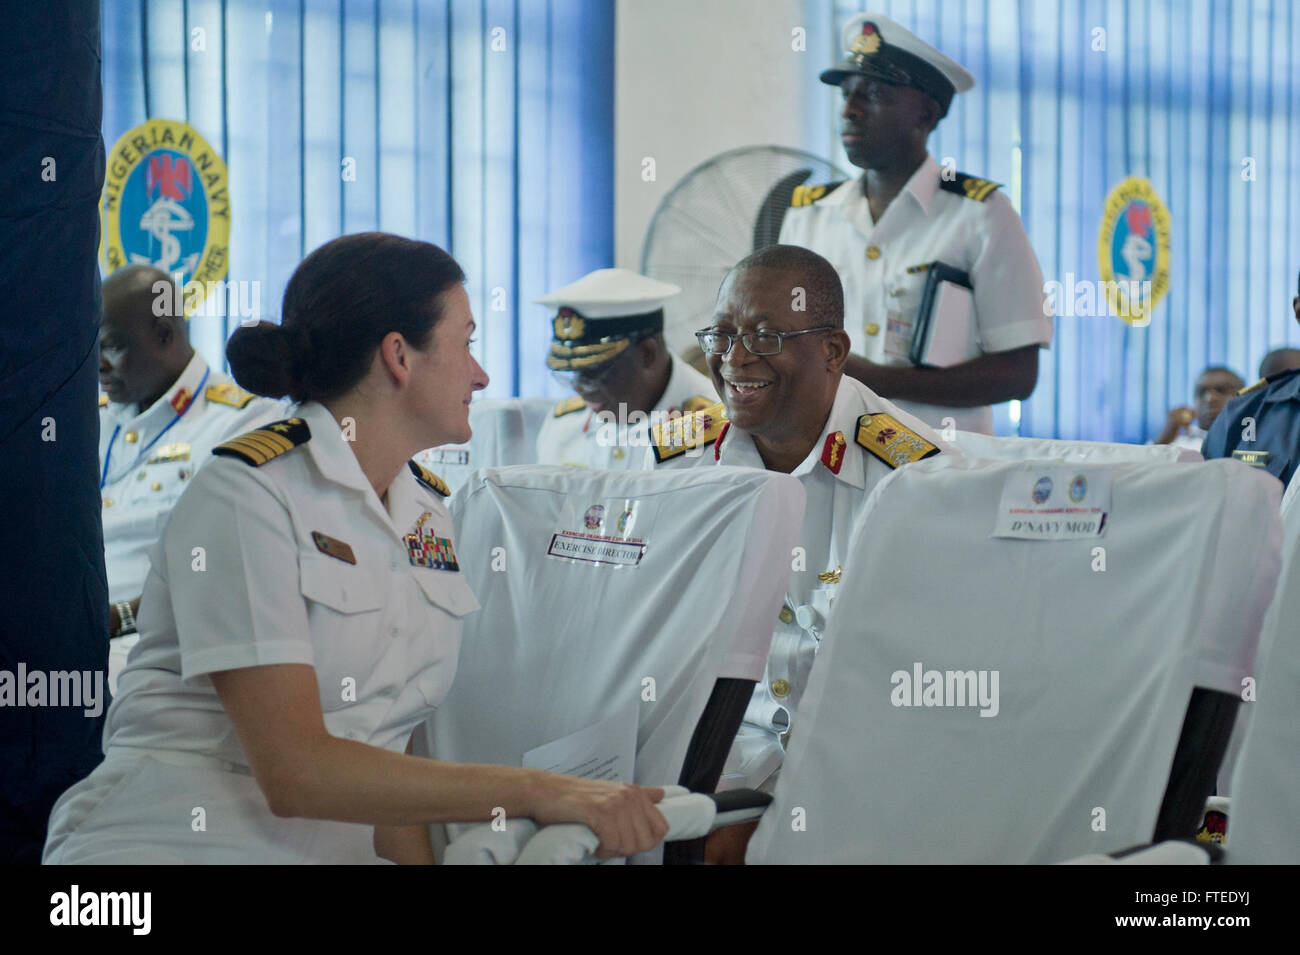 140423-N-IY142-047 LAGOS, Nigeria (Abril 23, 2014) - El capitán de la Marina de EE.UU. Nancy Lacore director de ejercicio, Obangame Express 2014, interactúa con la parte trasera. Adm. O.C. Medane, bandera oficial comandante del Comando Naval Oriental, durante la ceremonia de cierre de ejercicio en la marina de Nigeria occidental de la comandancia Naval. Obangame Express es un comando África estadounidense-patrocinado marítimas multinacionales ejercicio diseñado para aumentar la seguridad marítima y la seguridad en el Golfo de Guinea. (Ee.Uu. Navy photo by Mass Communication Specialist 2ª Clase John Herman/liberado) Foto de stock